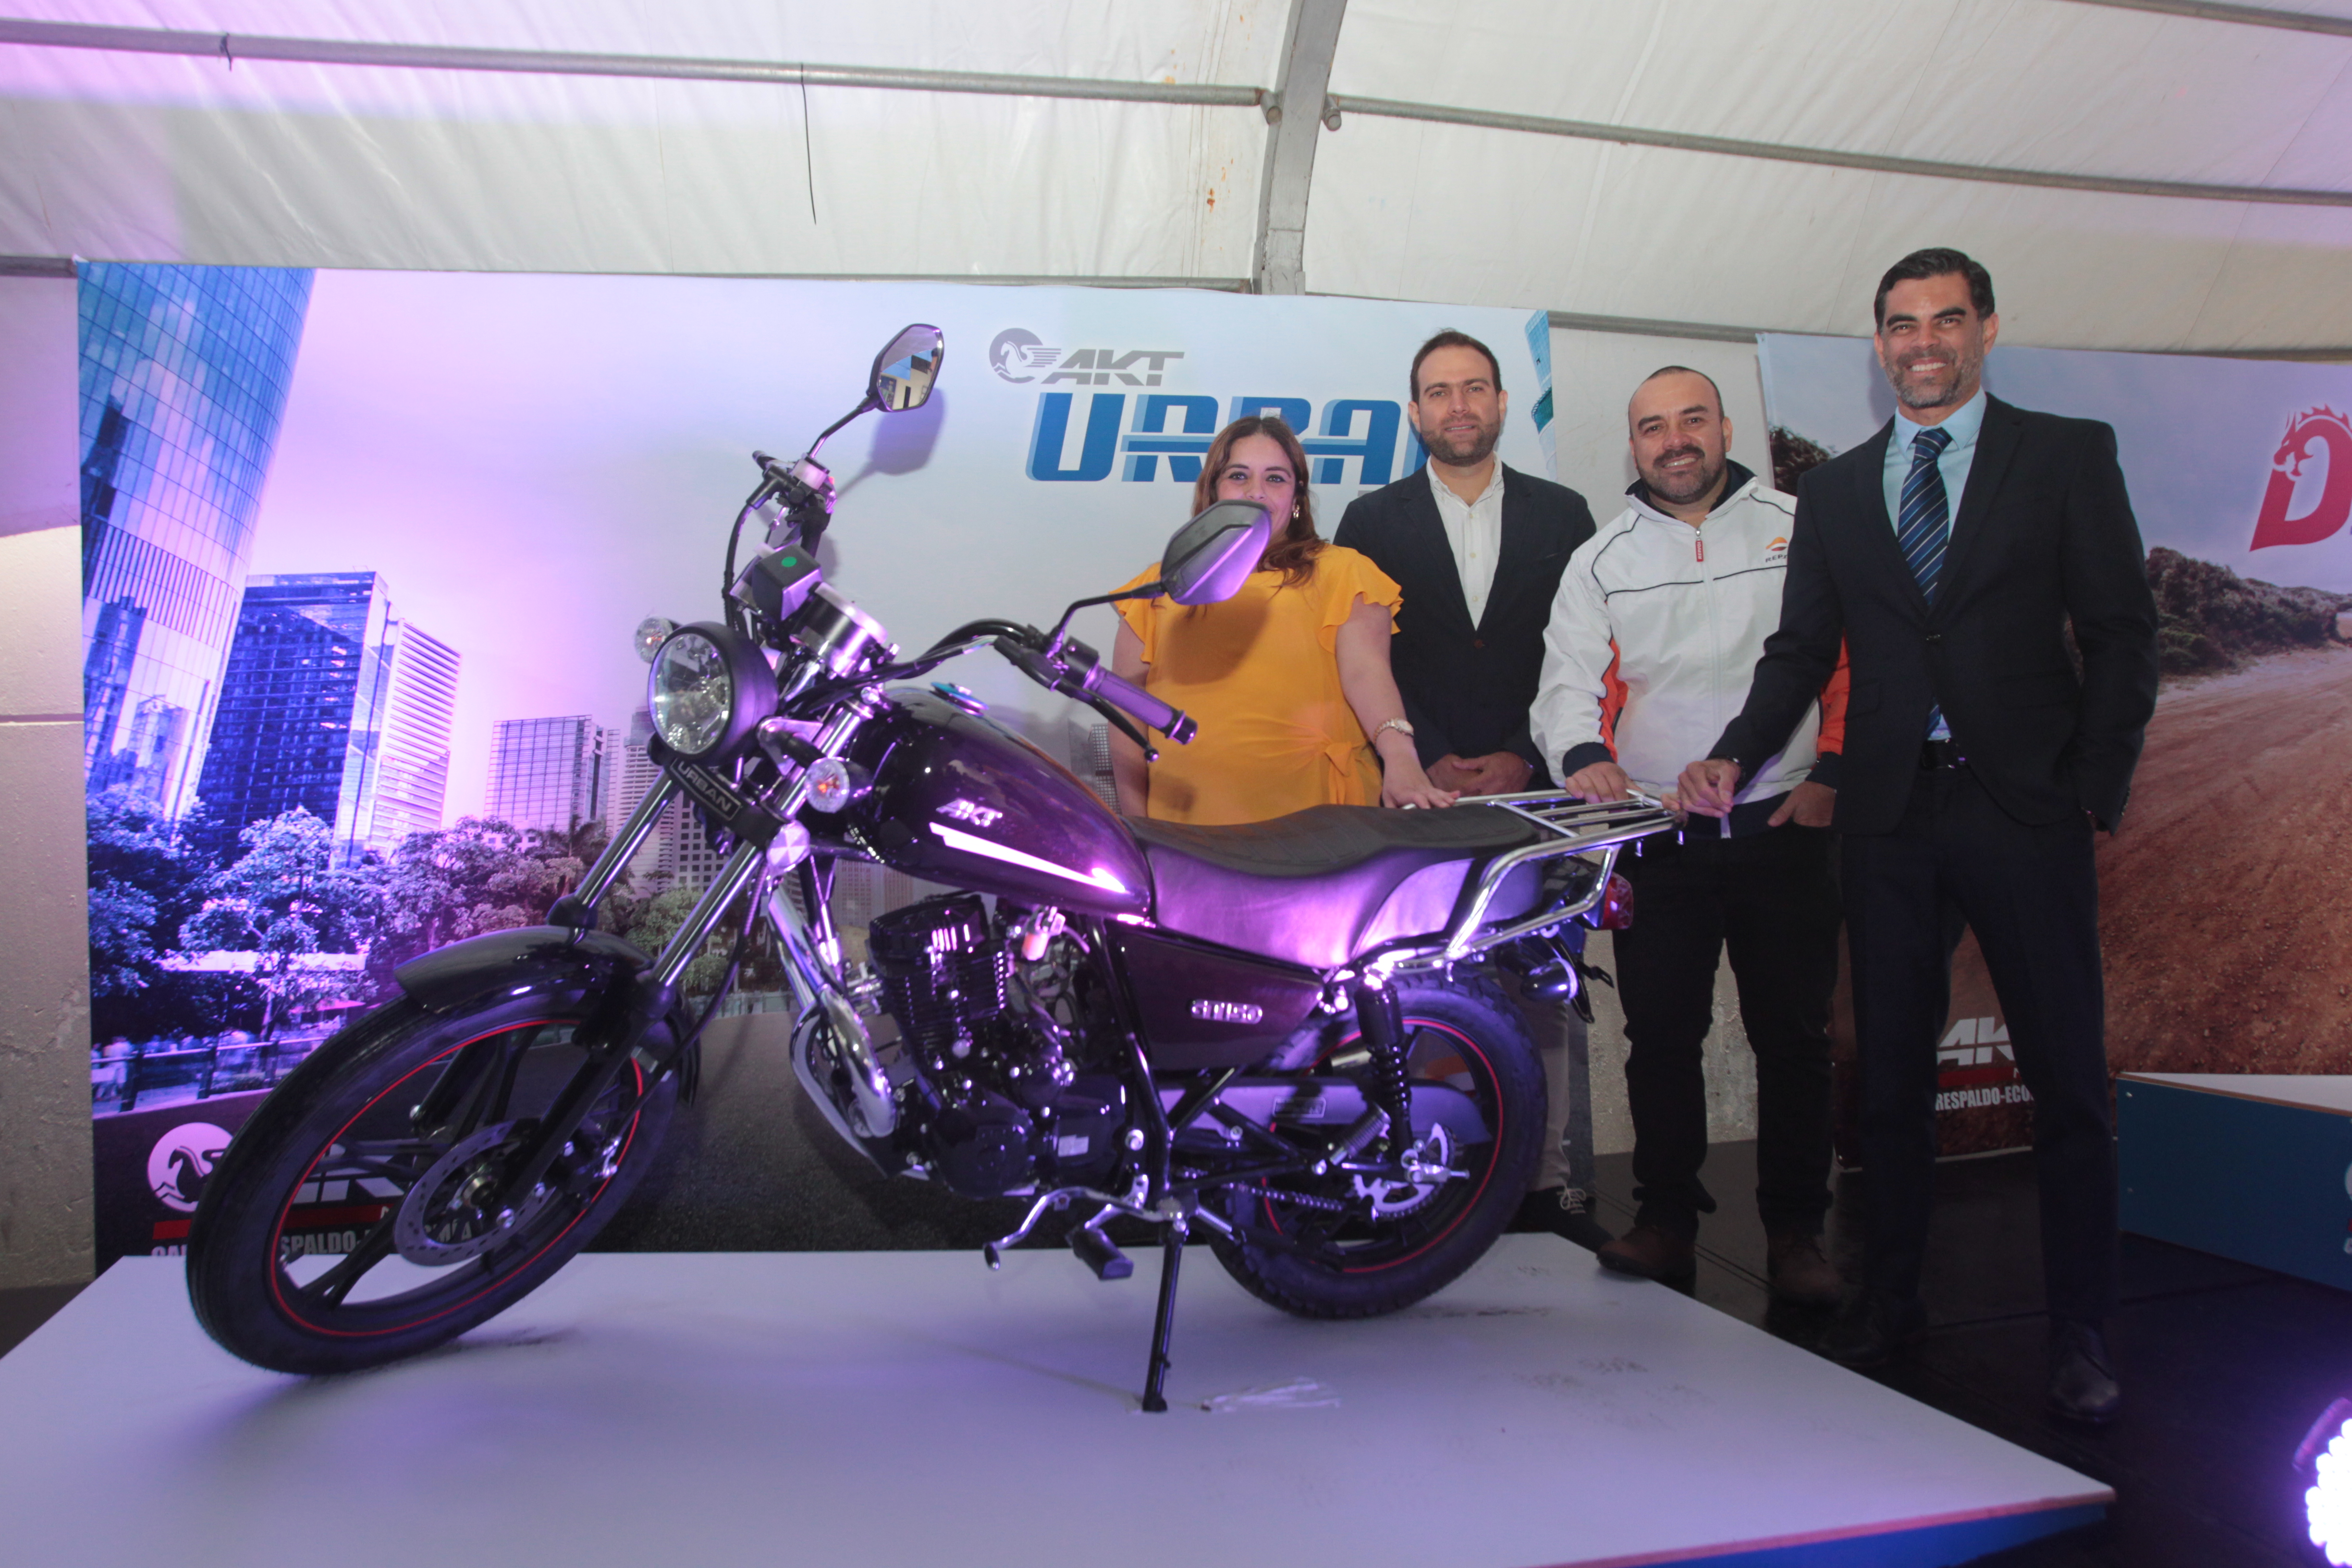 La Curacao presentó la nueva línea de motocicletas AKT. Foto (Prensa Libre: Norvin Mendoza